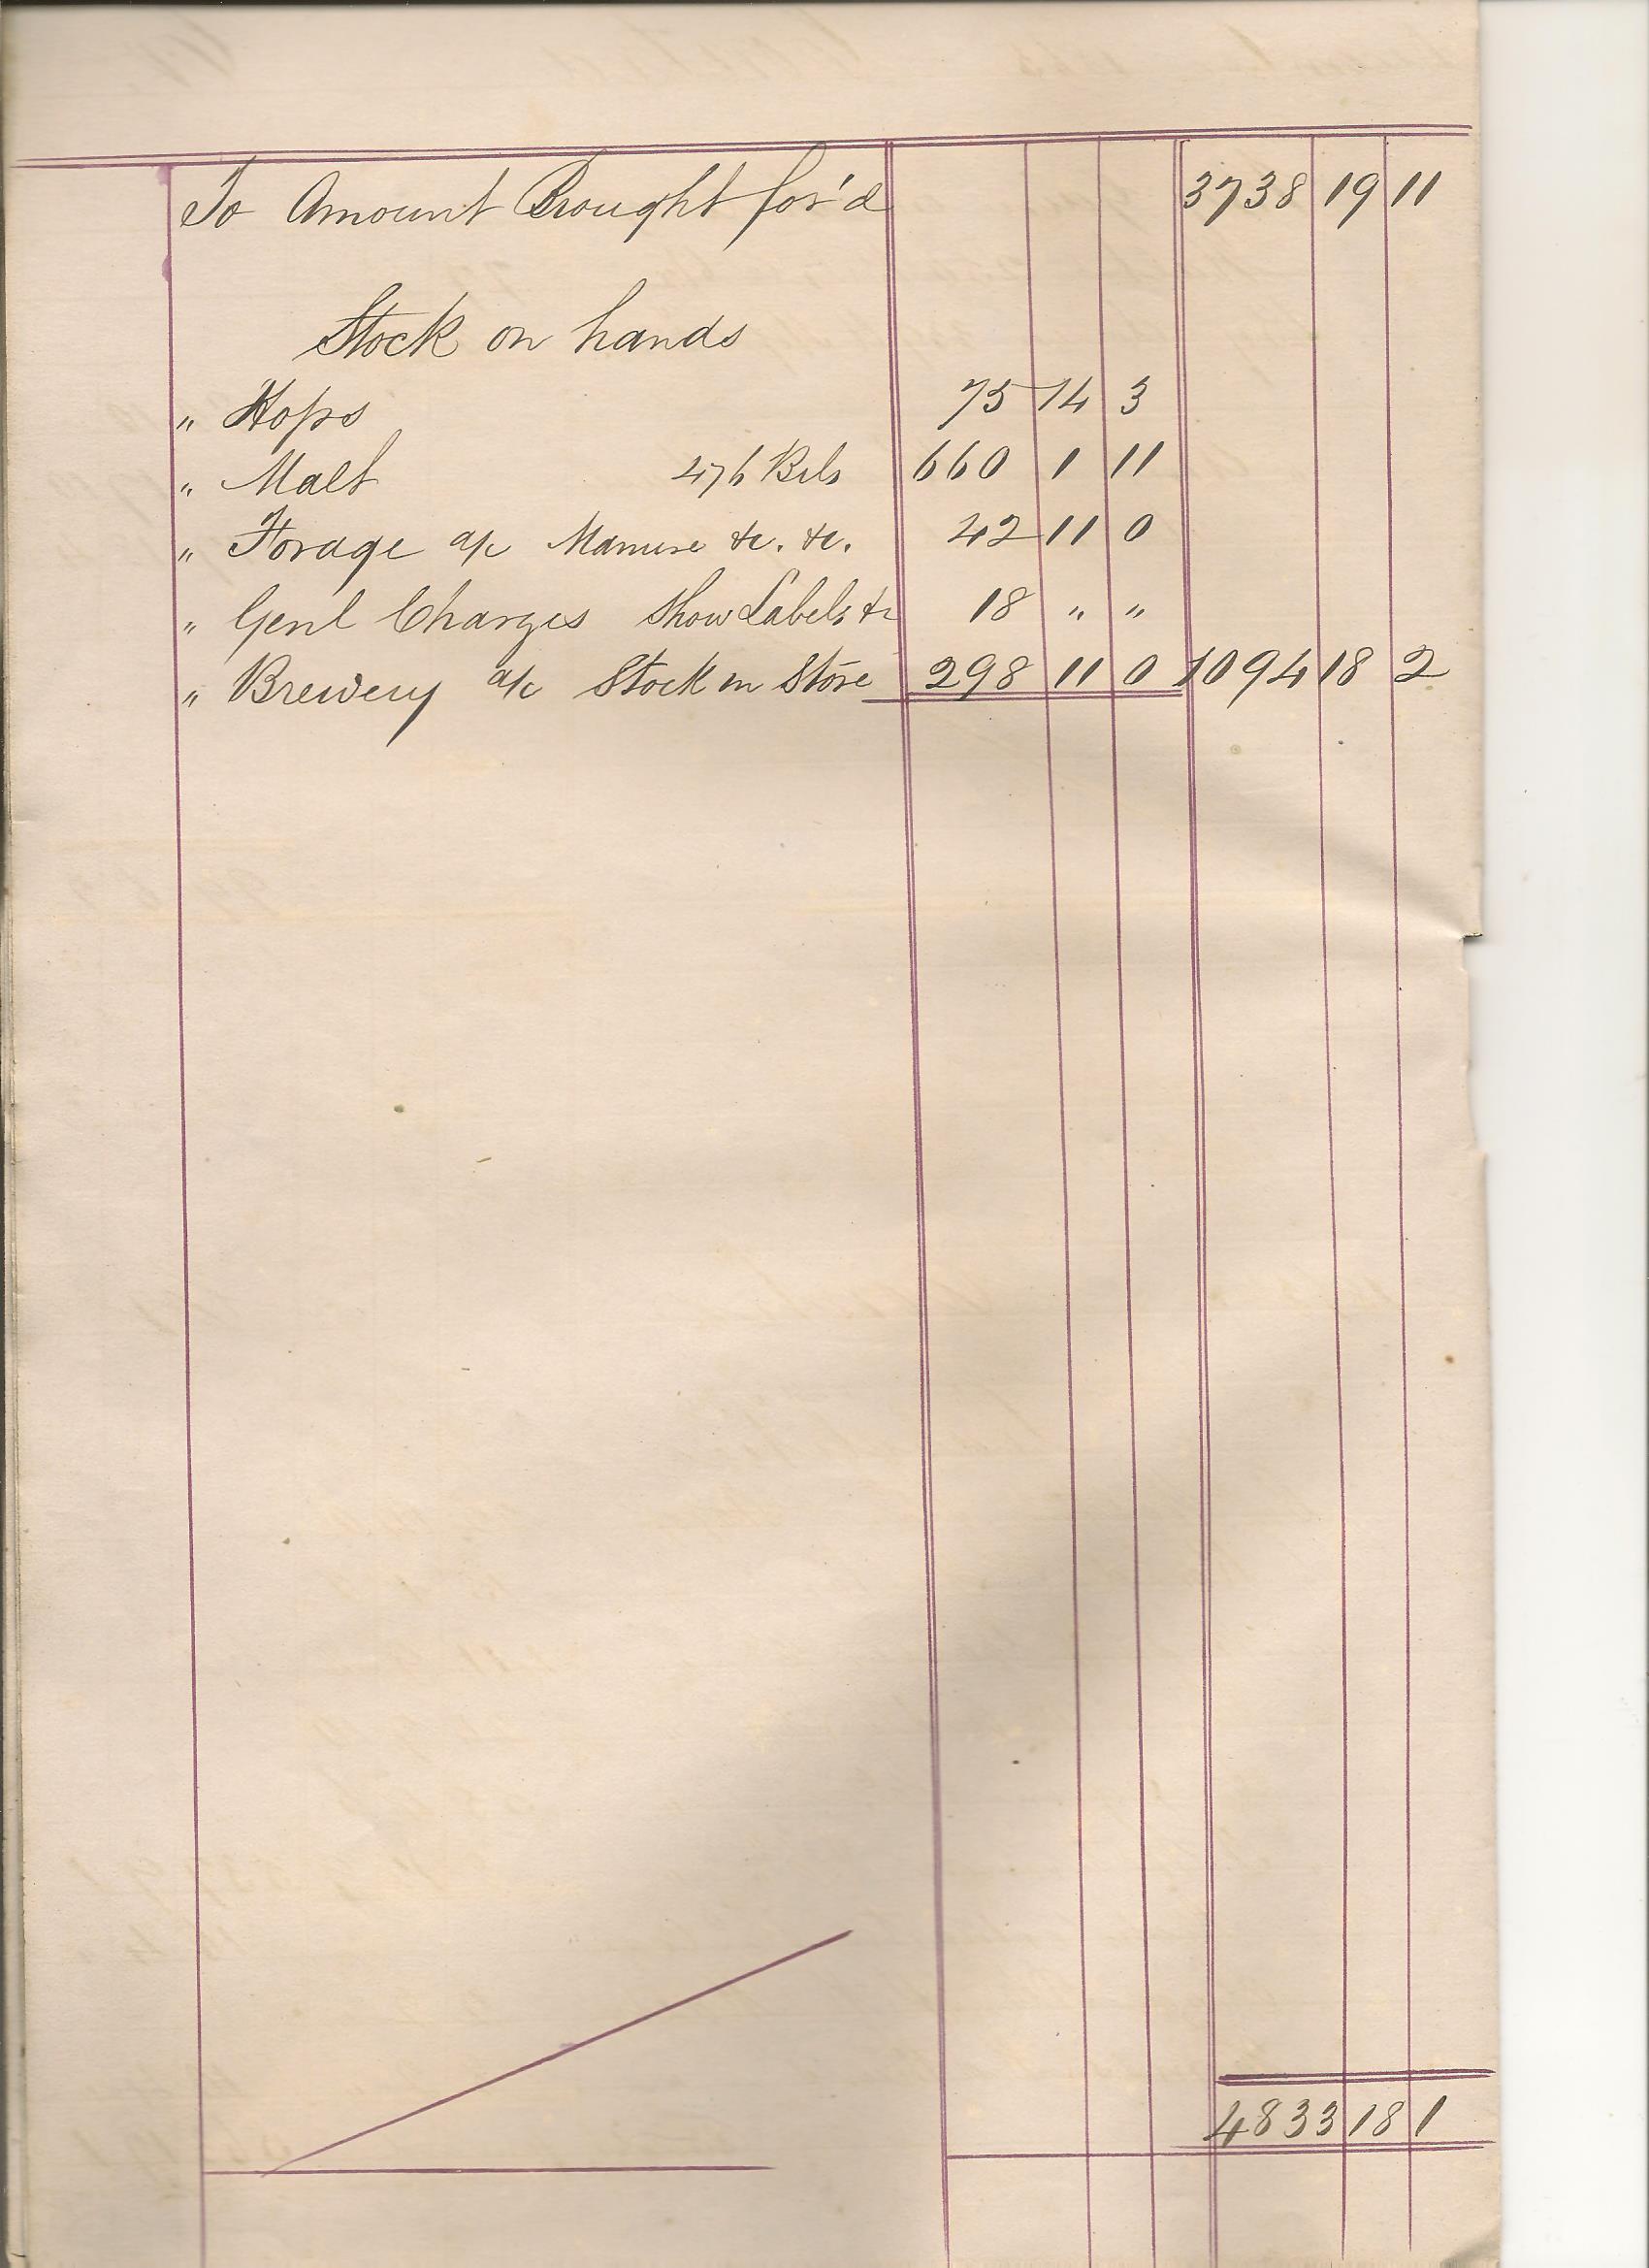 Macardle Moore Half Year Accounts Dec 1863